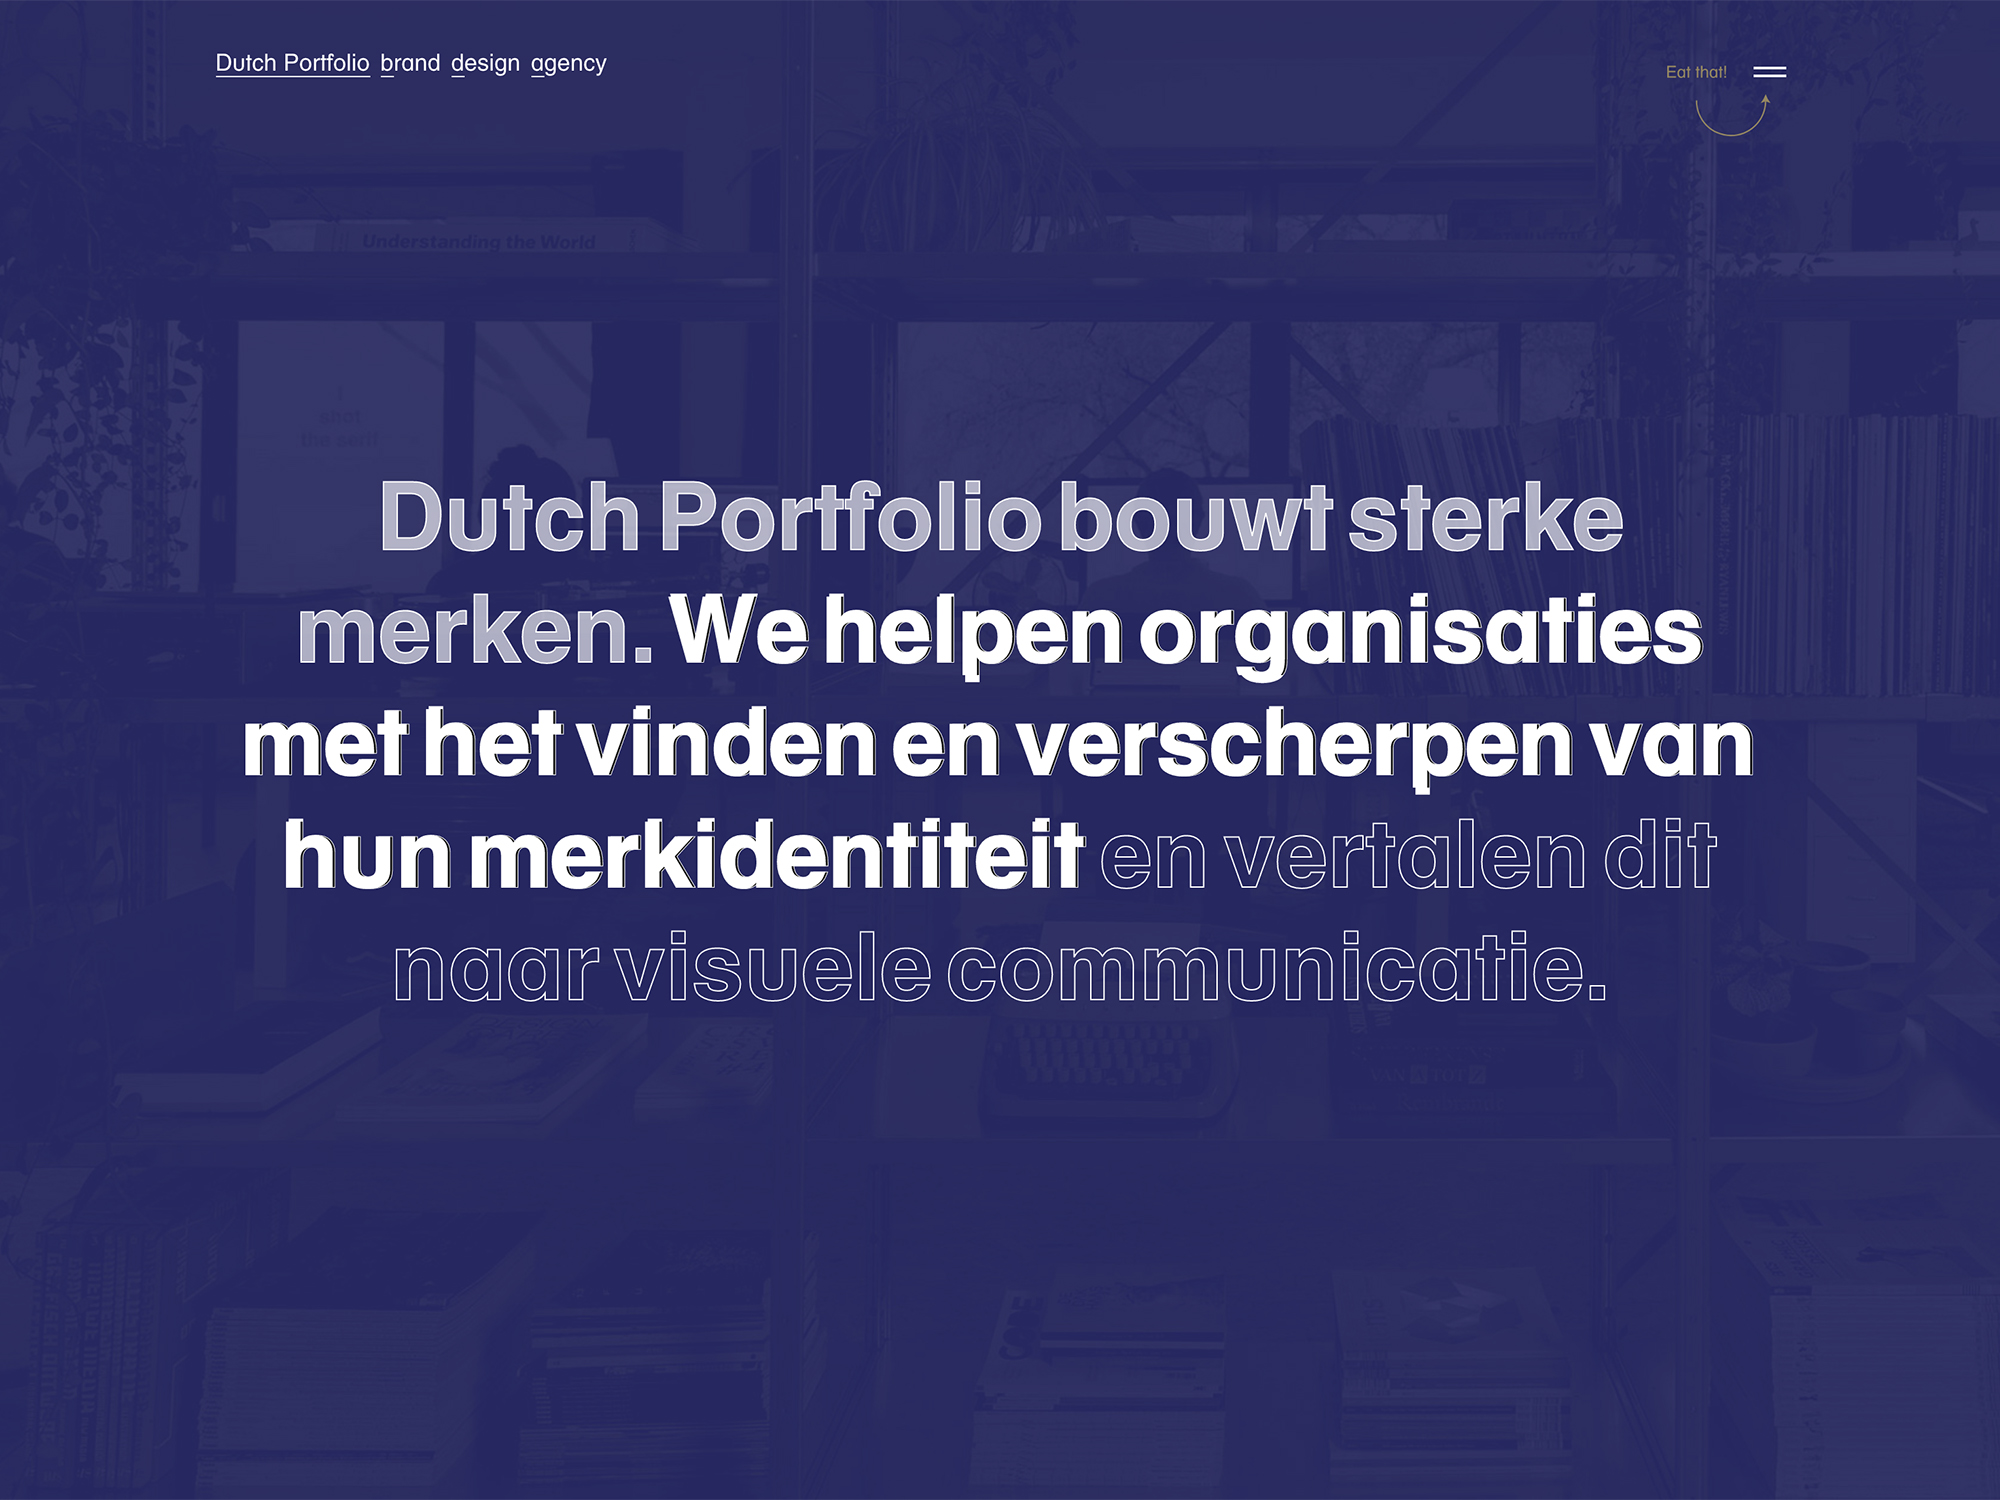 (c) Dutchportfolio.com